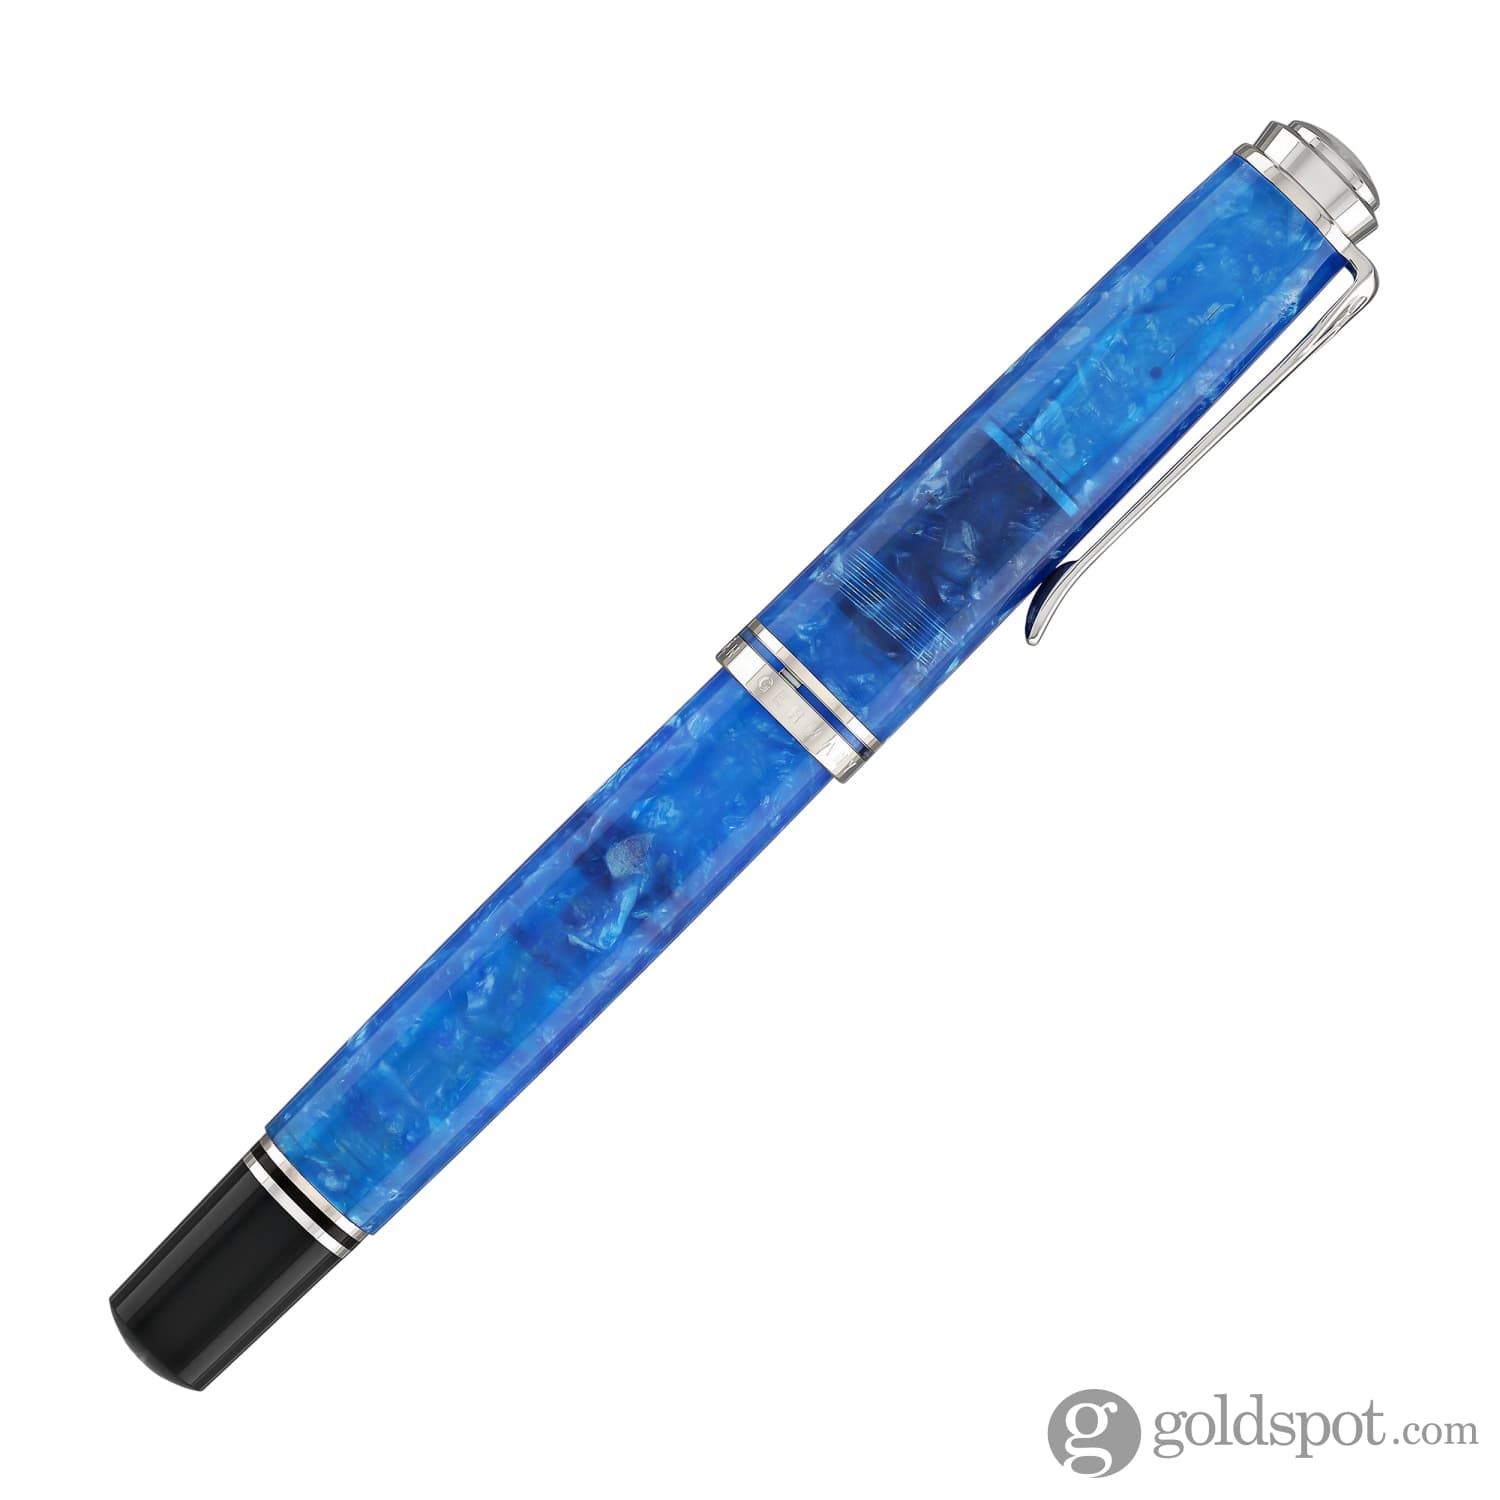 Pelikan Souveran M805 Fountain Pen in Vibrant Blue